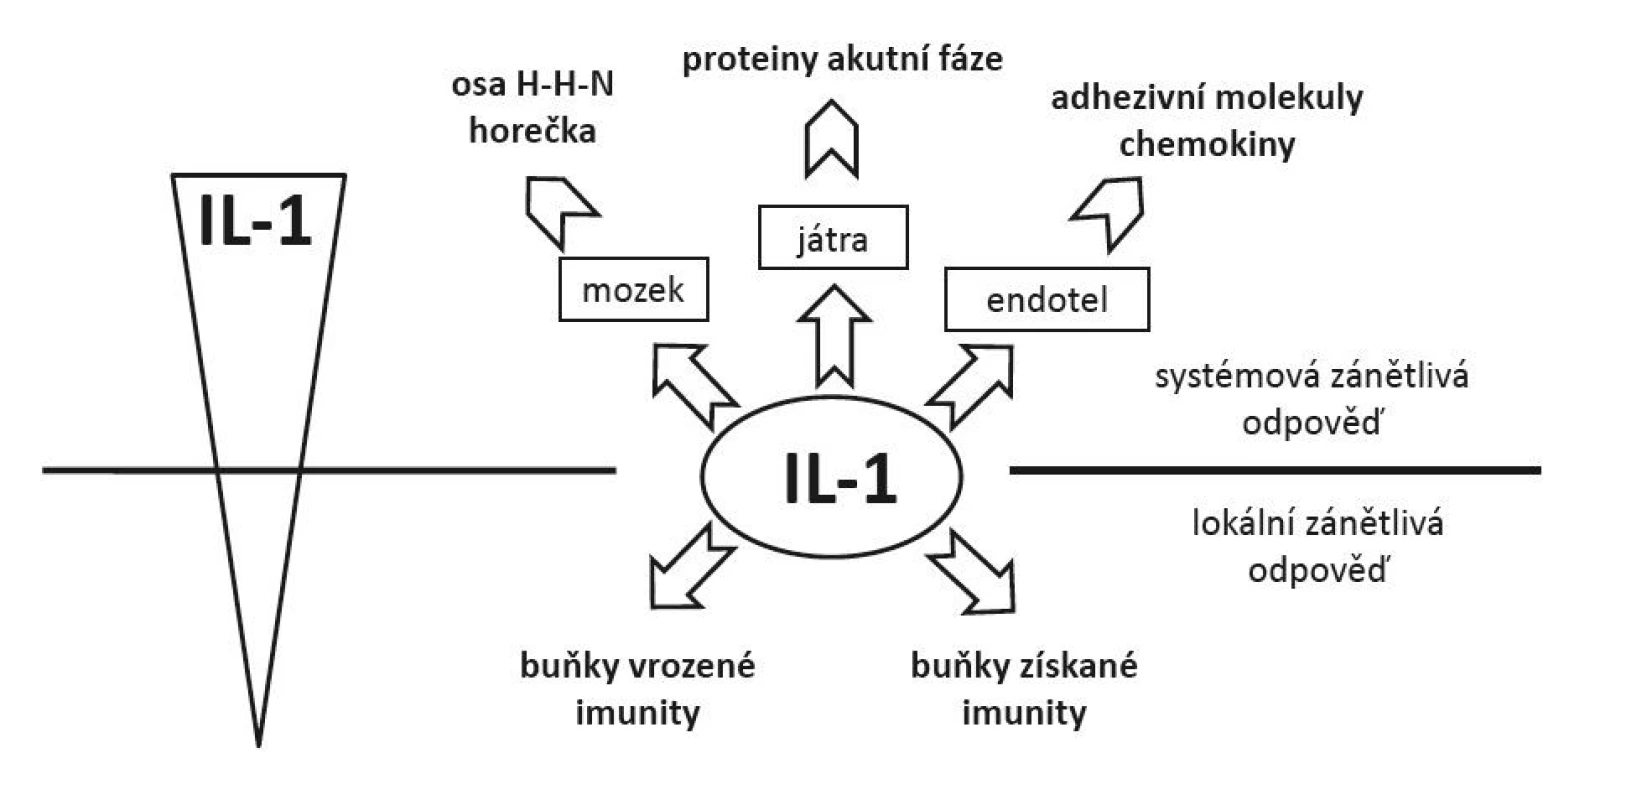 Vliv koncentrace IL-1 na charakter zánĕtlivé odpovĕdi − nižší koncentrace vedoucí k lokální zánĕtlivé odpovĕdi a aktivaci mechanismů vrozené a získané imunity; vyšší koncentrace spojené se systémovou zánĕtlivou odpovĕdí (aktivace osy hypothalamus − hypofýza − nadledviny, rozvoj horečky, produkce proteinů akutní fáze, aktivace endotelií produkující chemokiny a exprimující adhezivní molekuly)